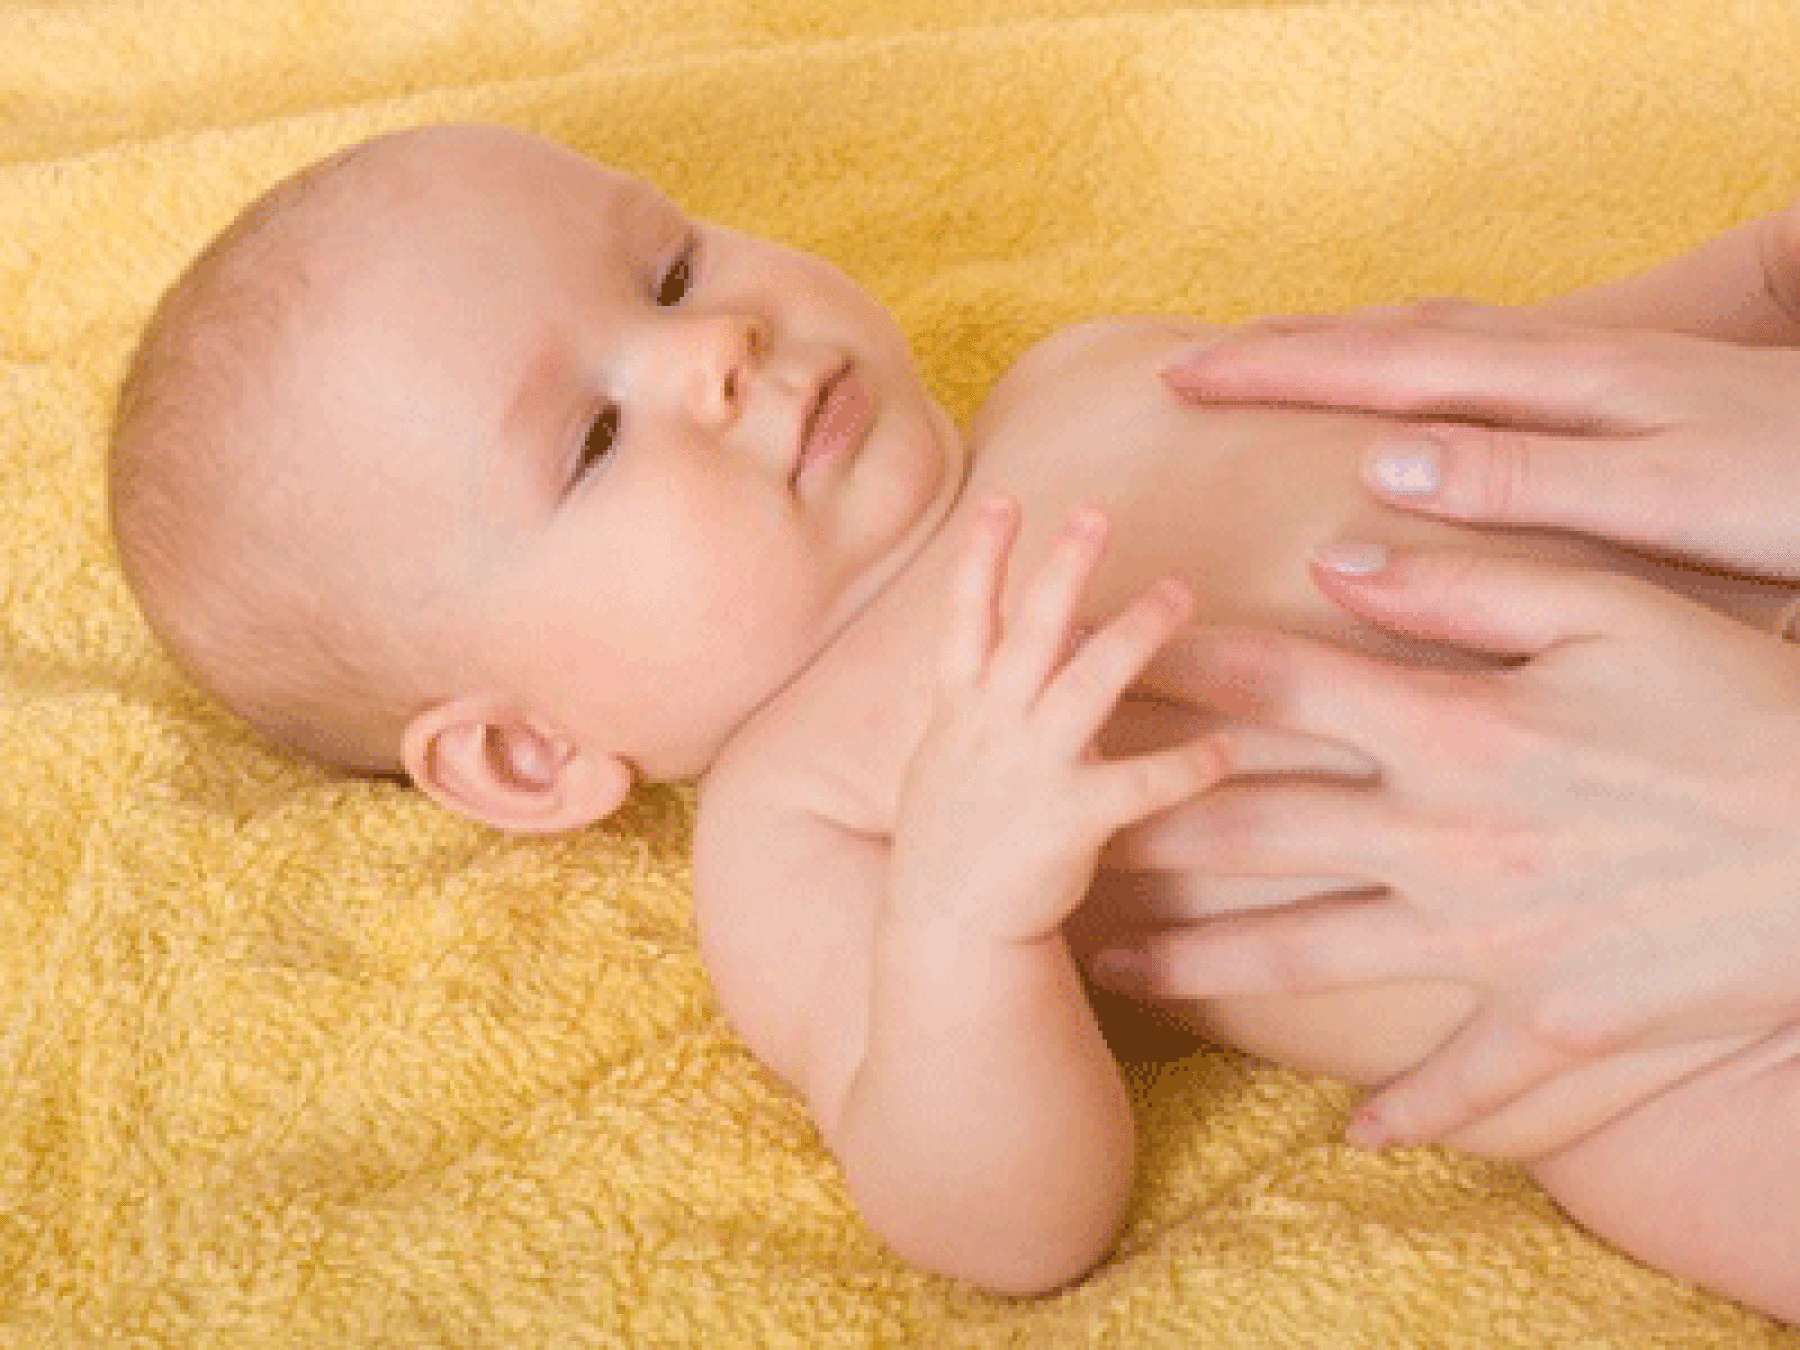 Eczéma de bébé : quel traitement ?